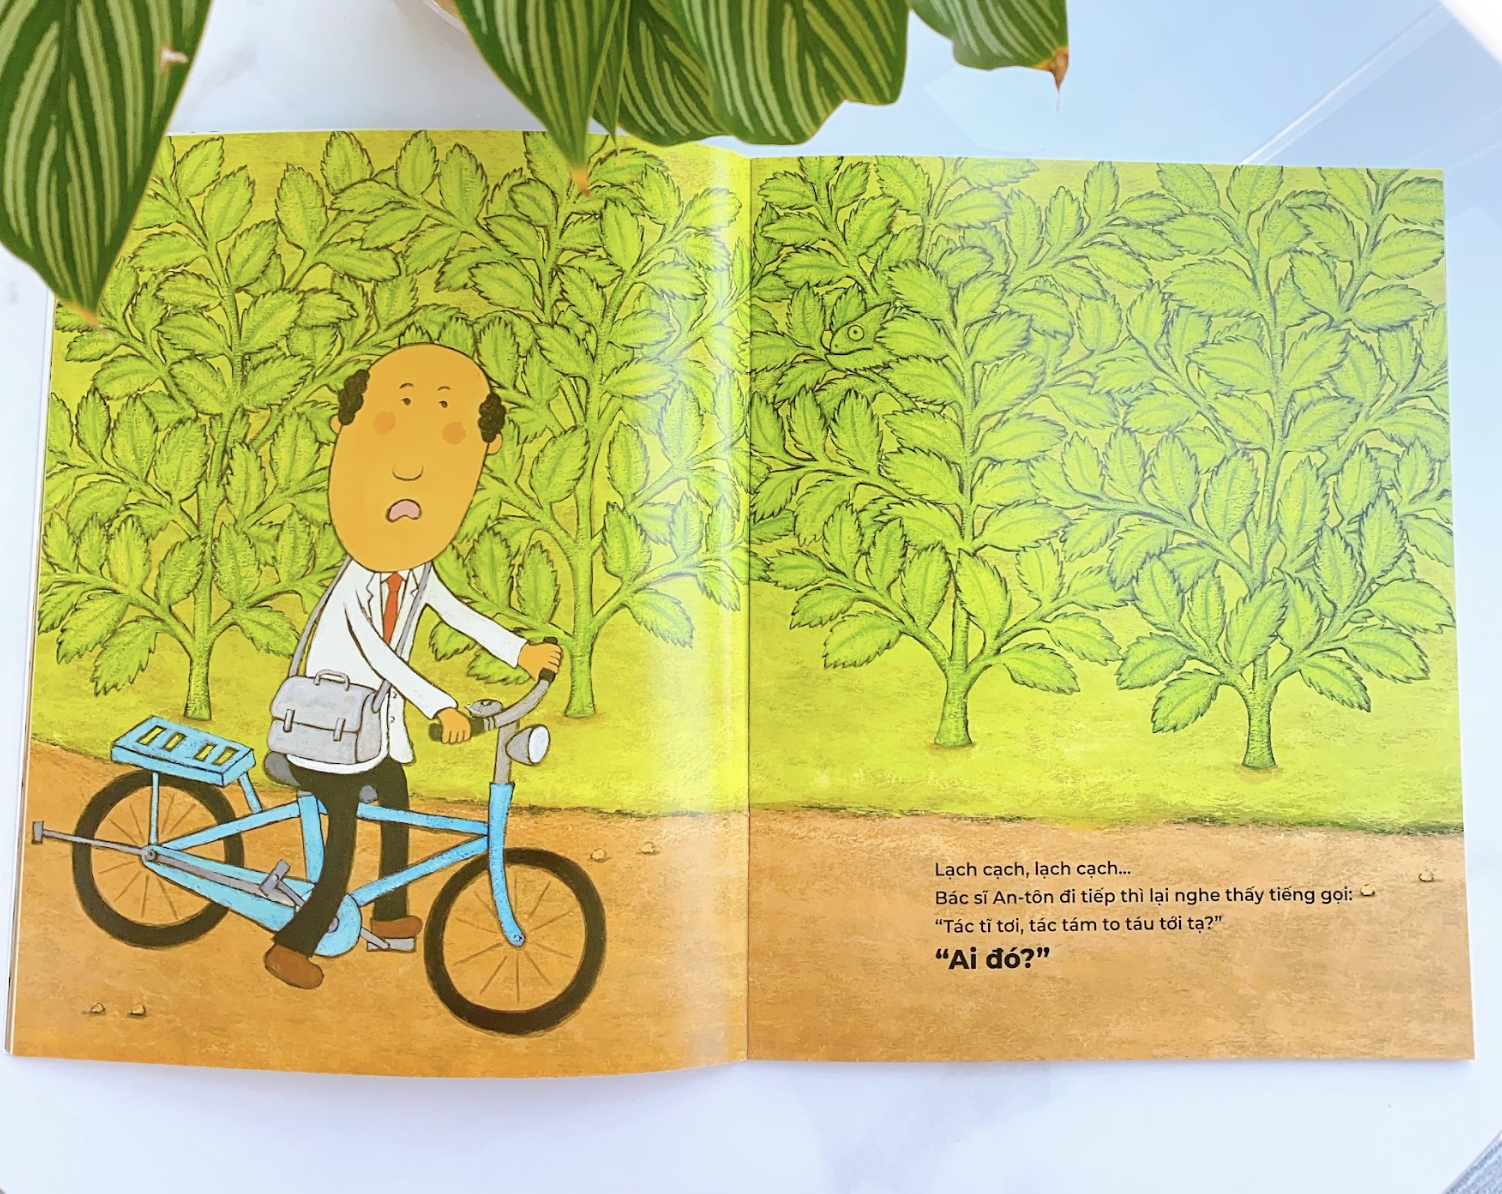 Truyện cho bé 4 tuổi tốt bụng: Bộ sách Bác sĩ An-tôn